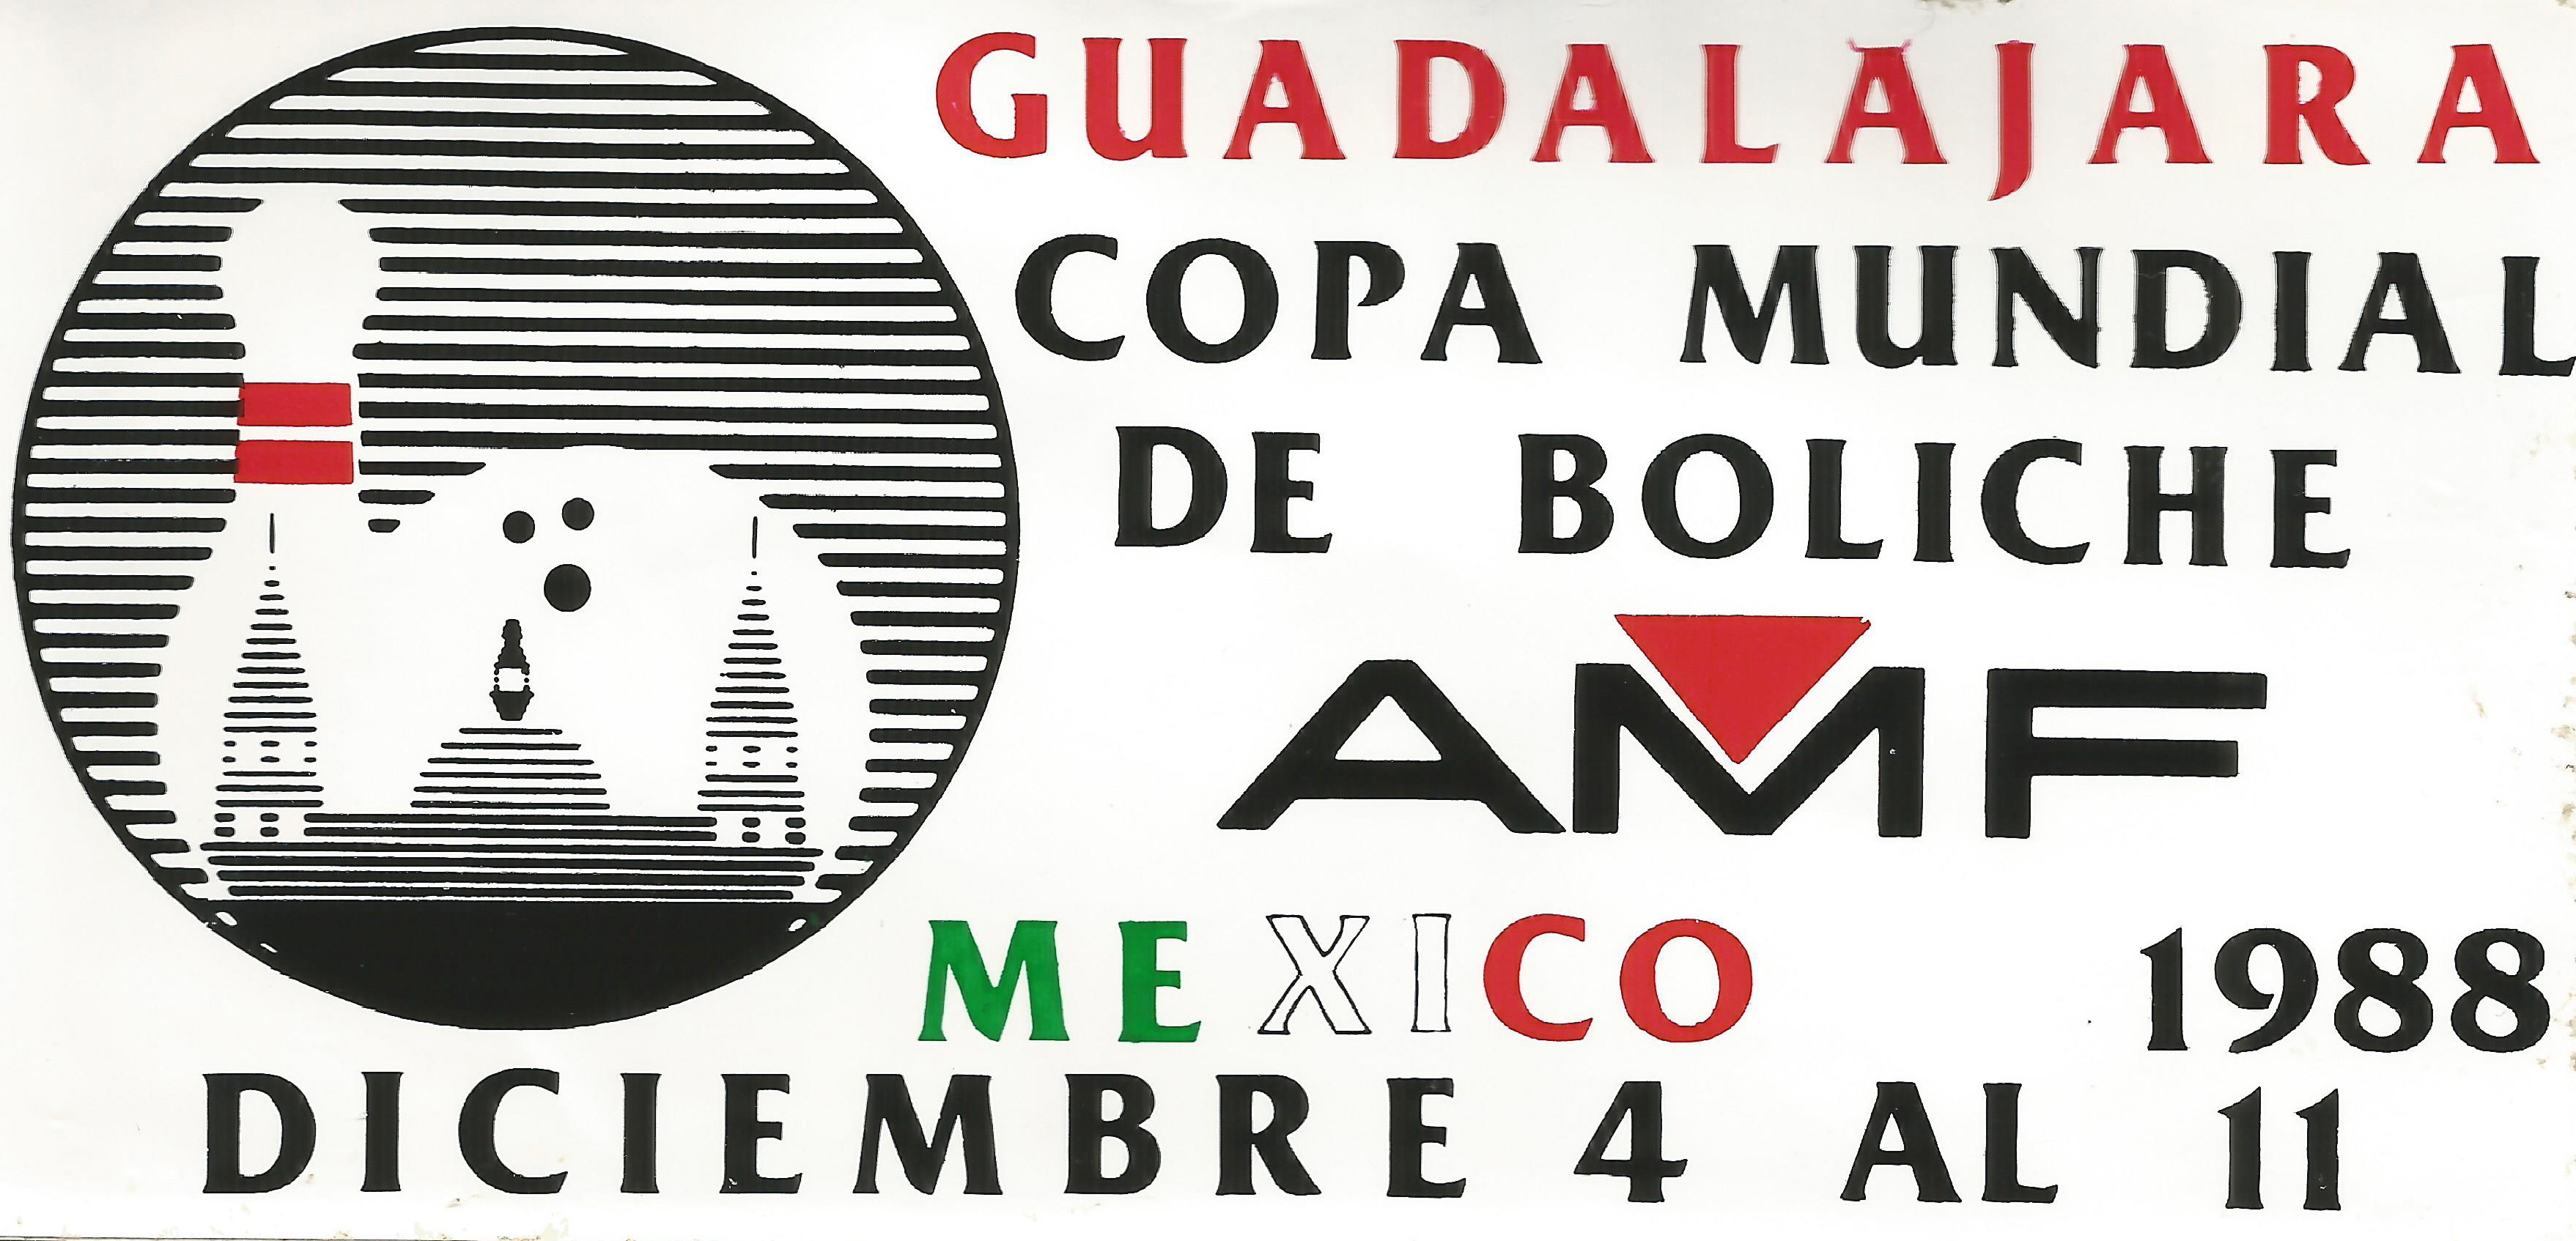 1988 Guadalajara Logo